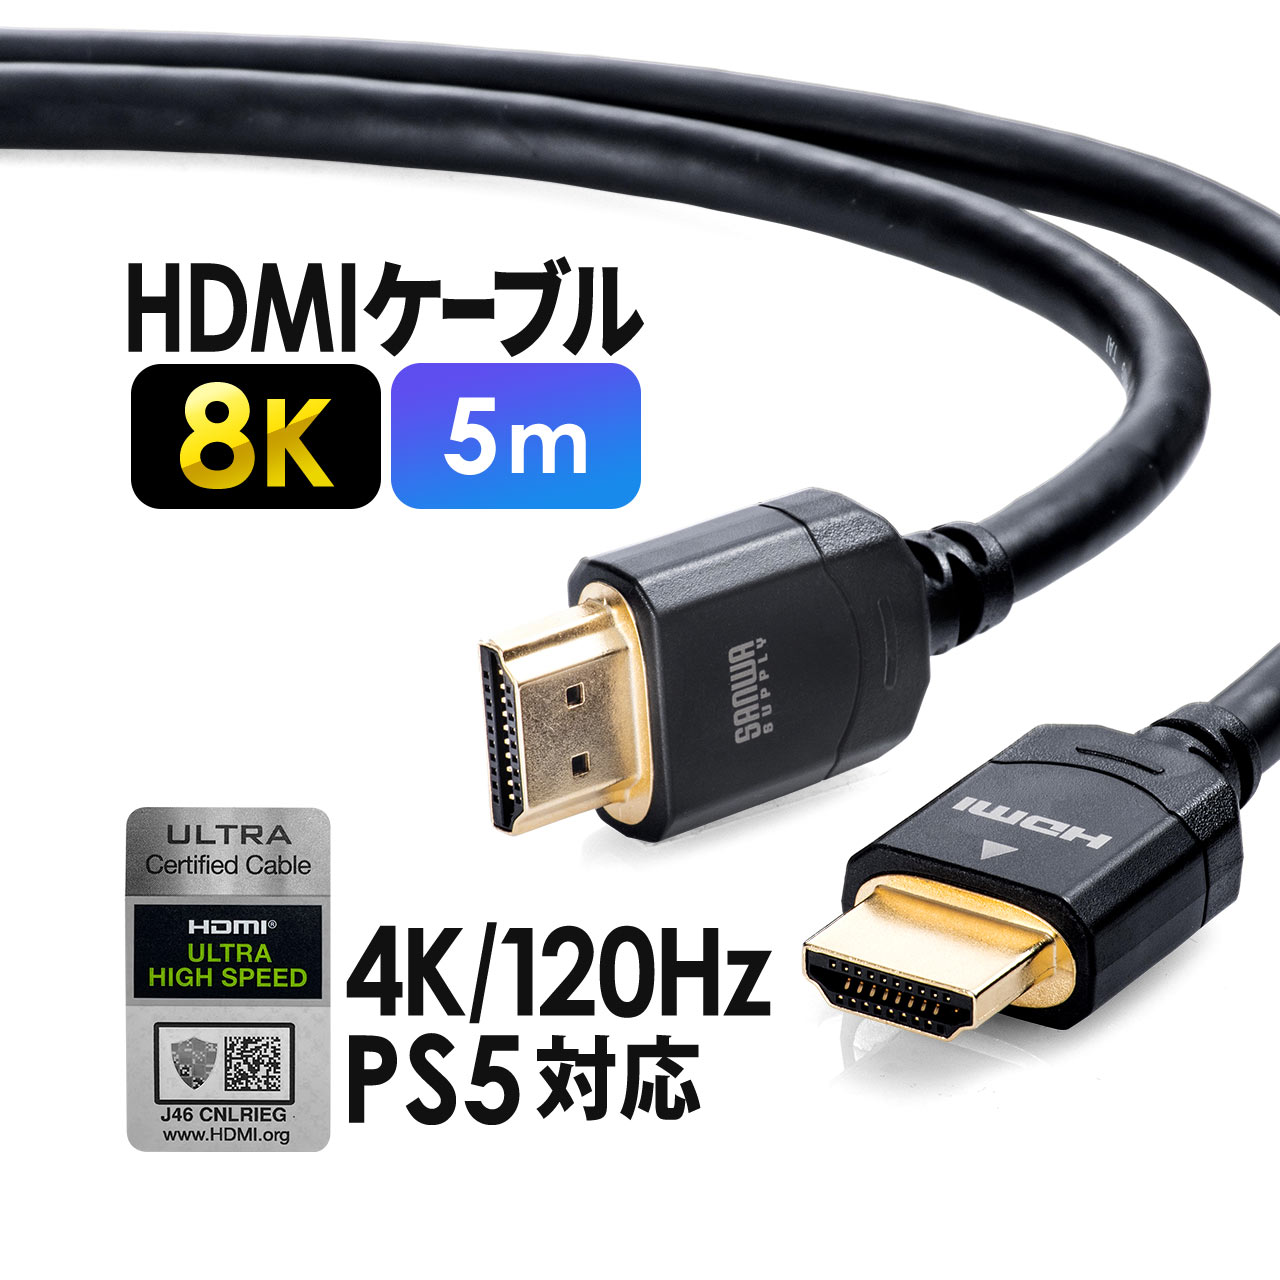 素敵な HDMIケーブル 1m ウルトラハイスピード 8K60Hz 48Gbps対応 KM-HD20-U10 サンワサプライ